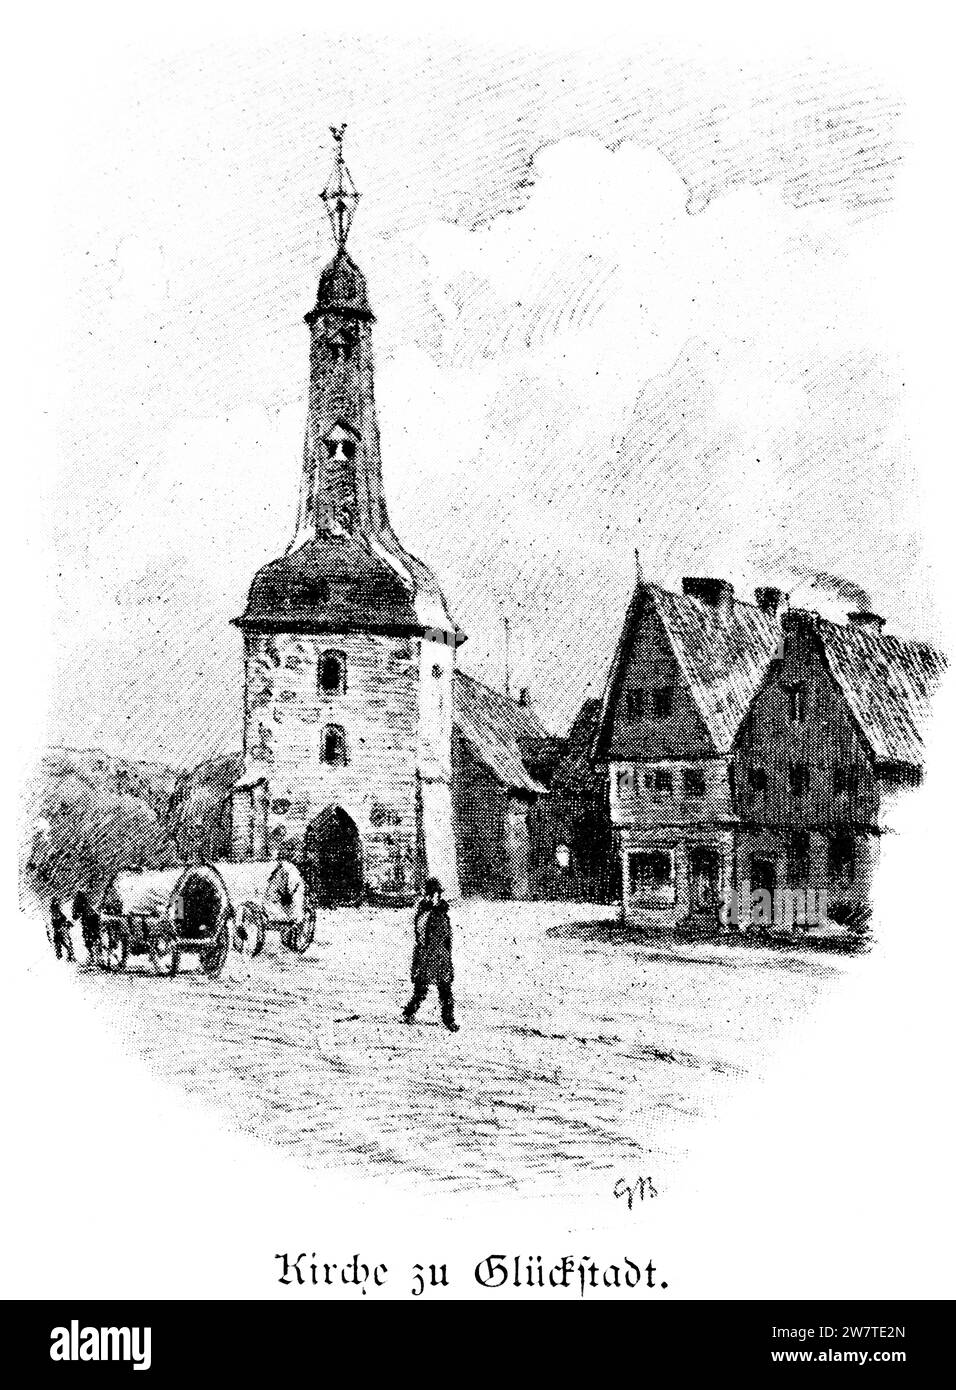 Église sur la place du marché de Glückstadt, Schleswig-Holstein, Allemagne du Nord, Europe centrale, Illustration historique 1896 Banque D'Images